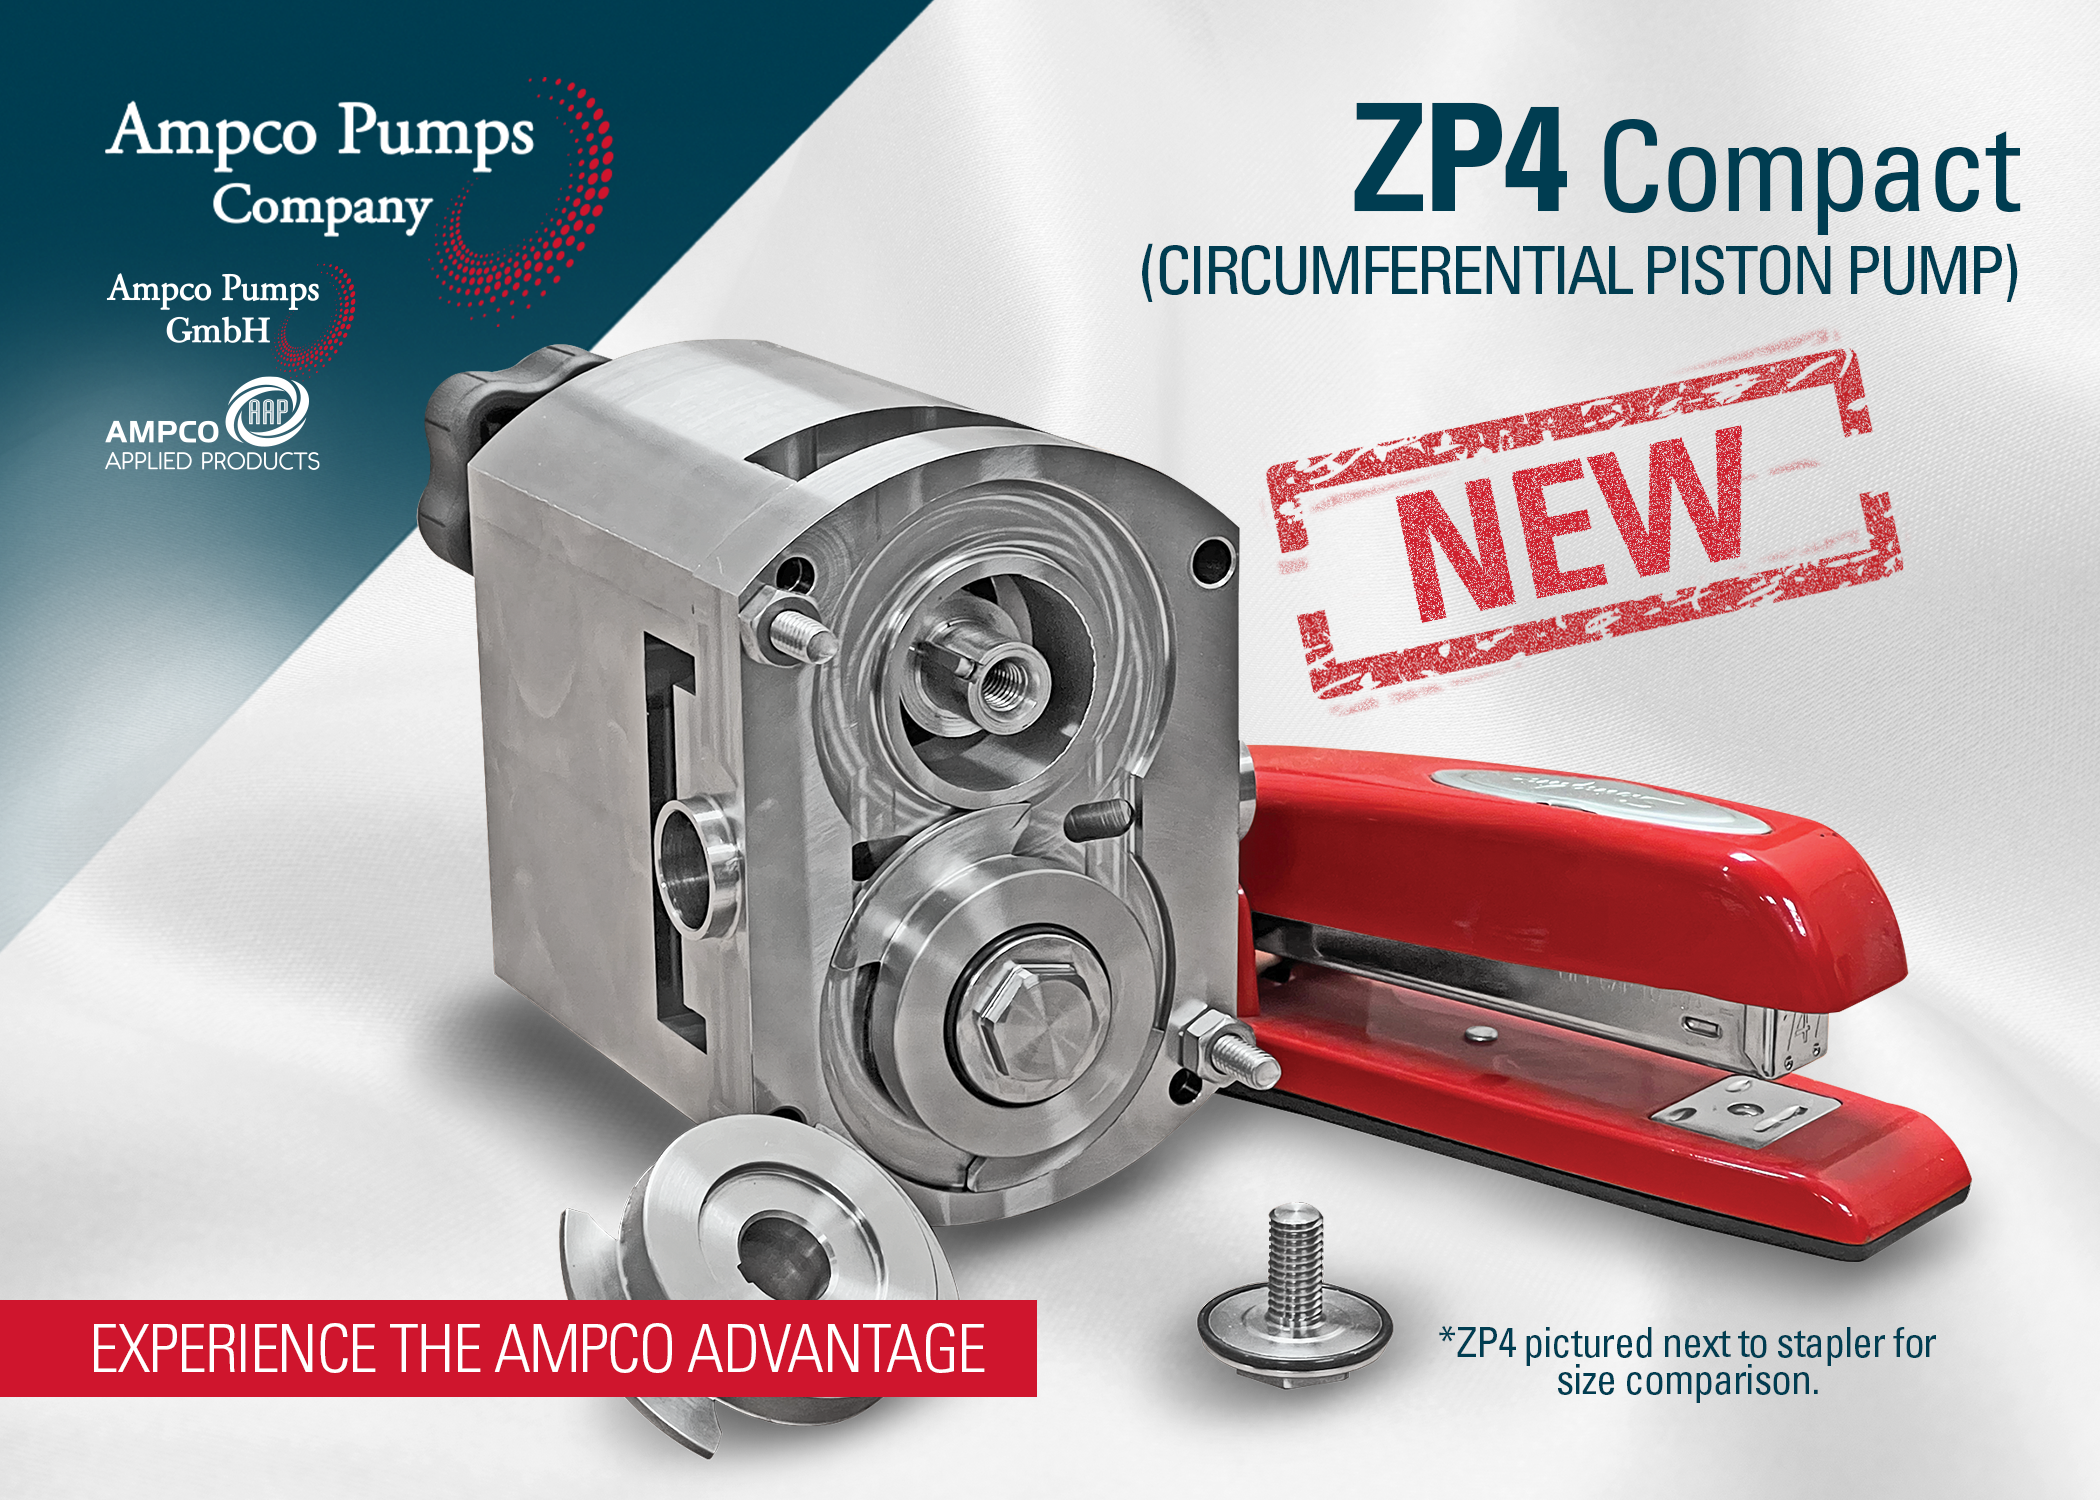 Bomba de pistón circunferencial compacta Ampco Pumps ZP4 para bajo caudal y dosificación